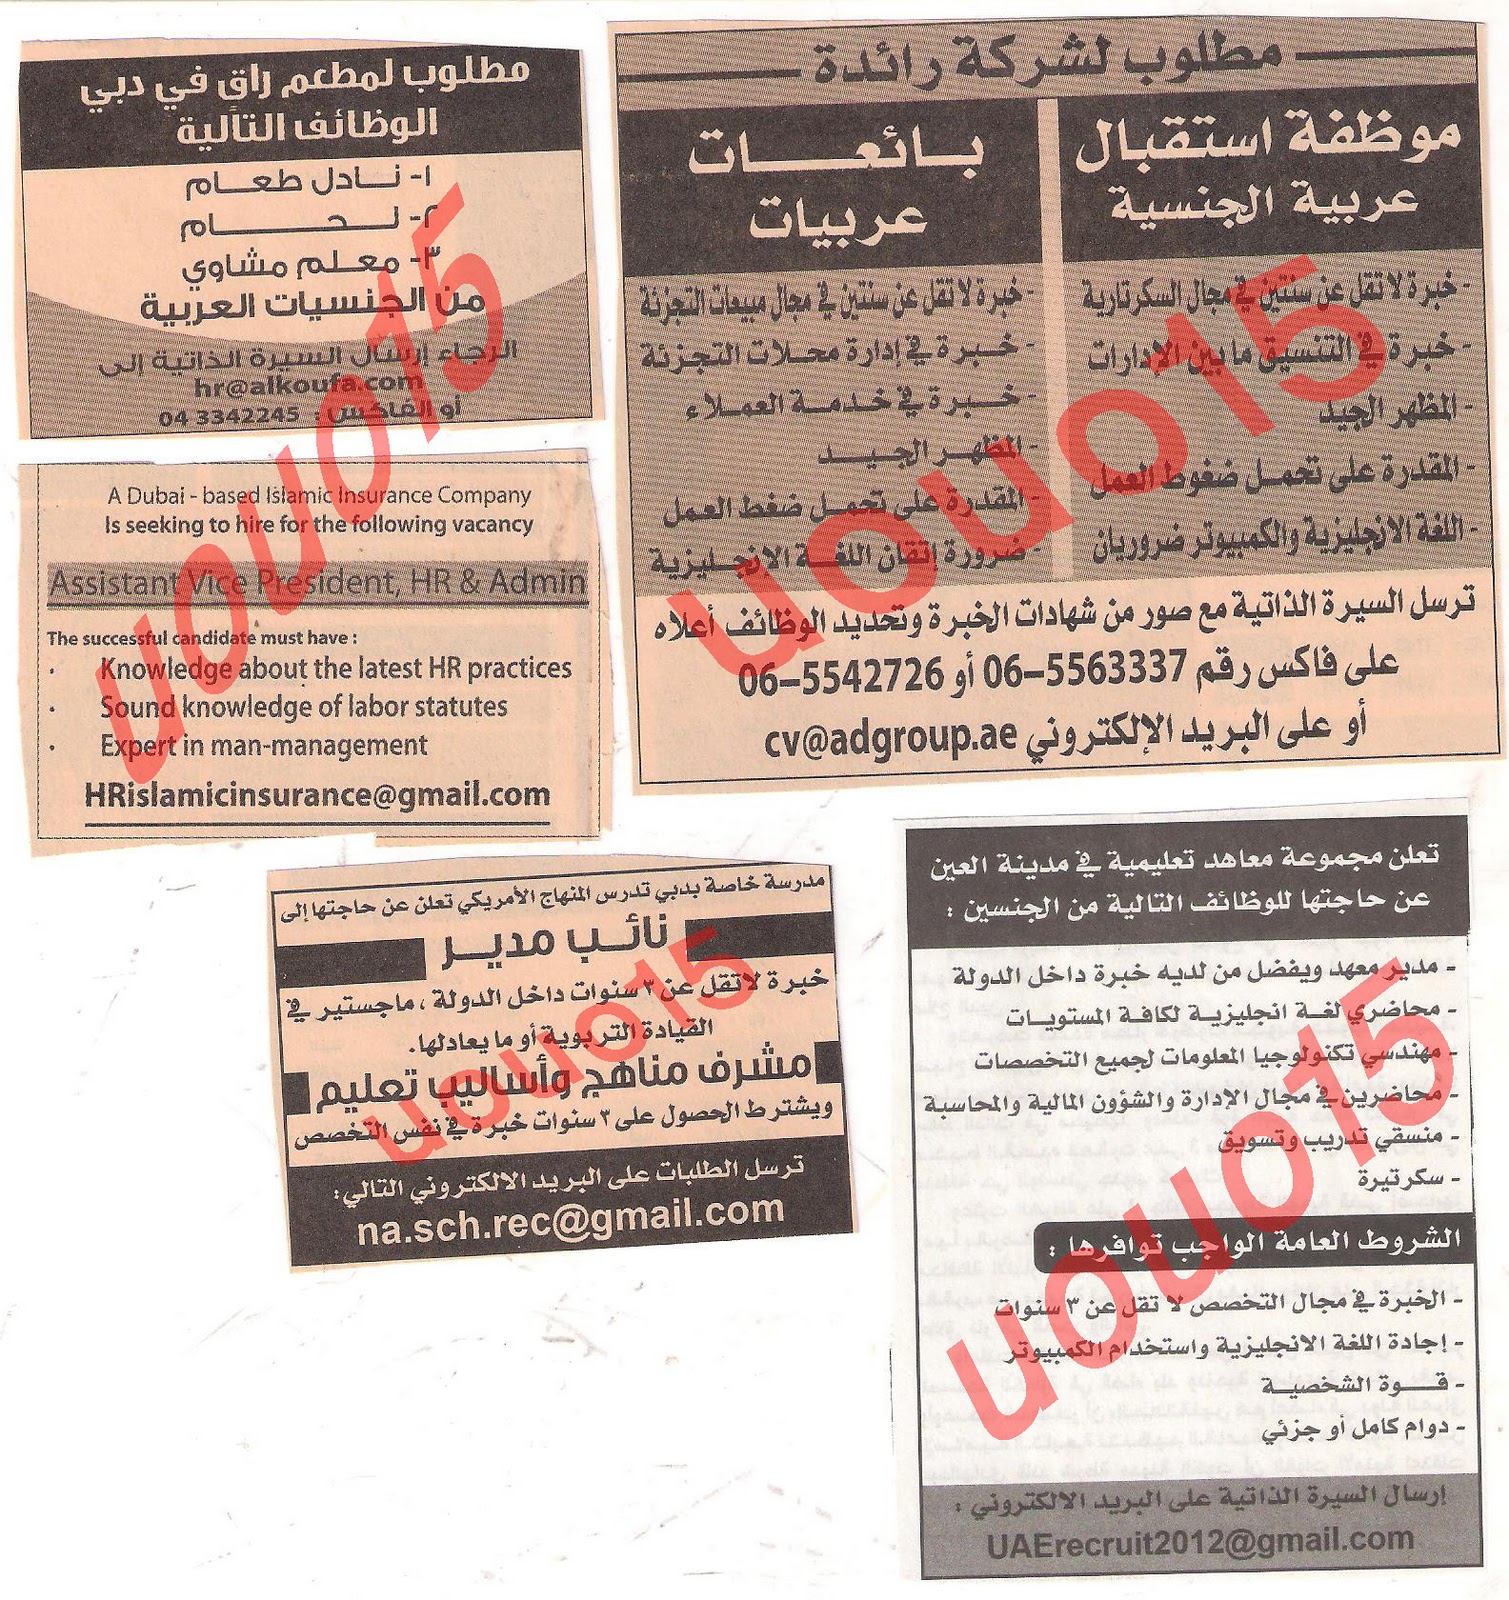 وظائف شاغرة من جريدة الخليج الخميس 22\12\2011 , وظائف الهيئه العامة لرعاية الشباب والرياضة  6